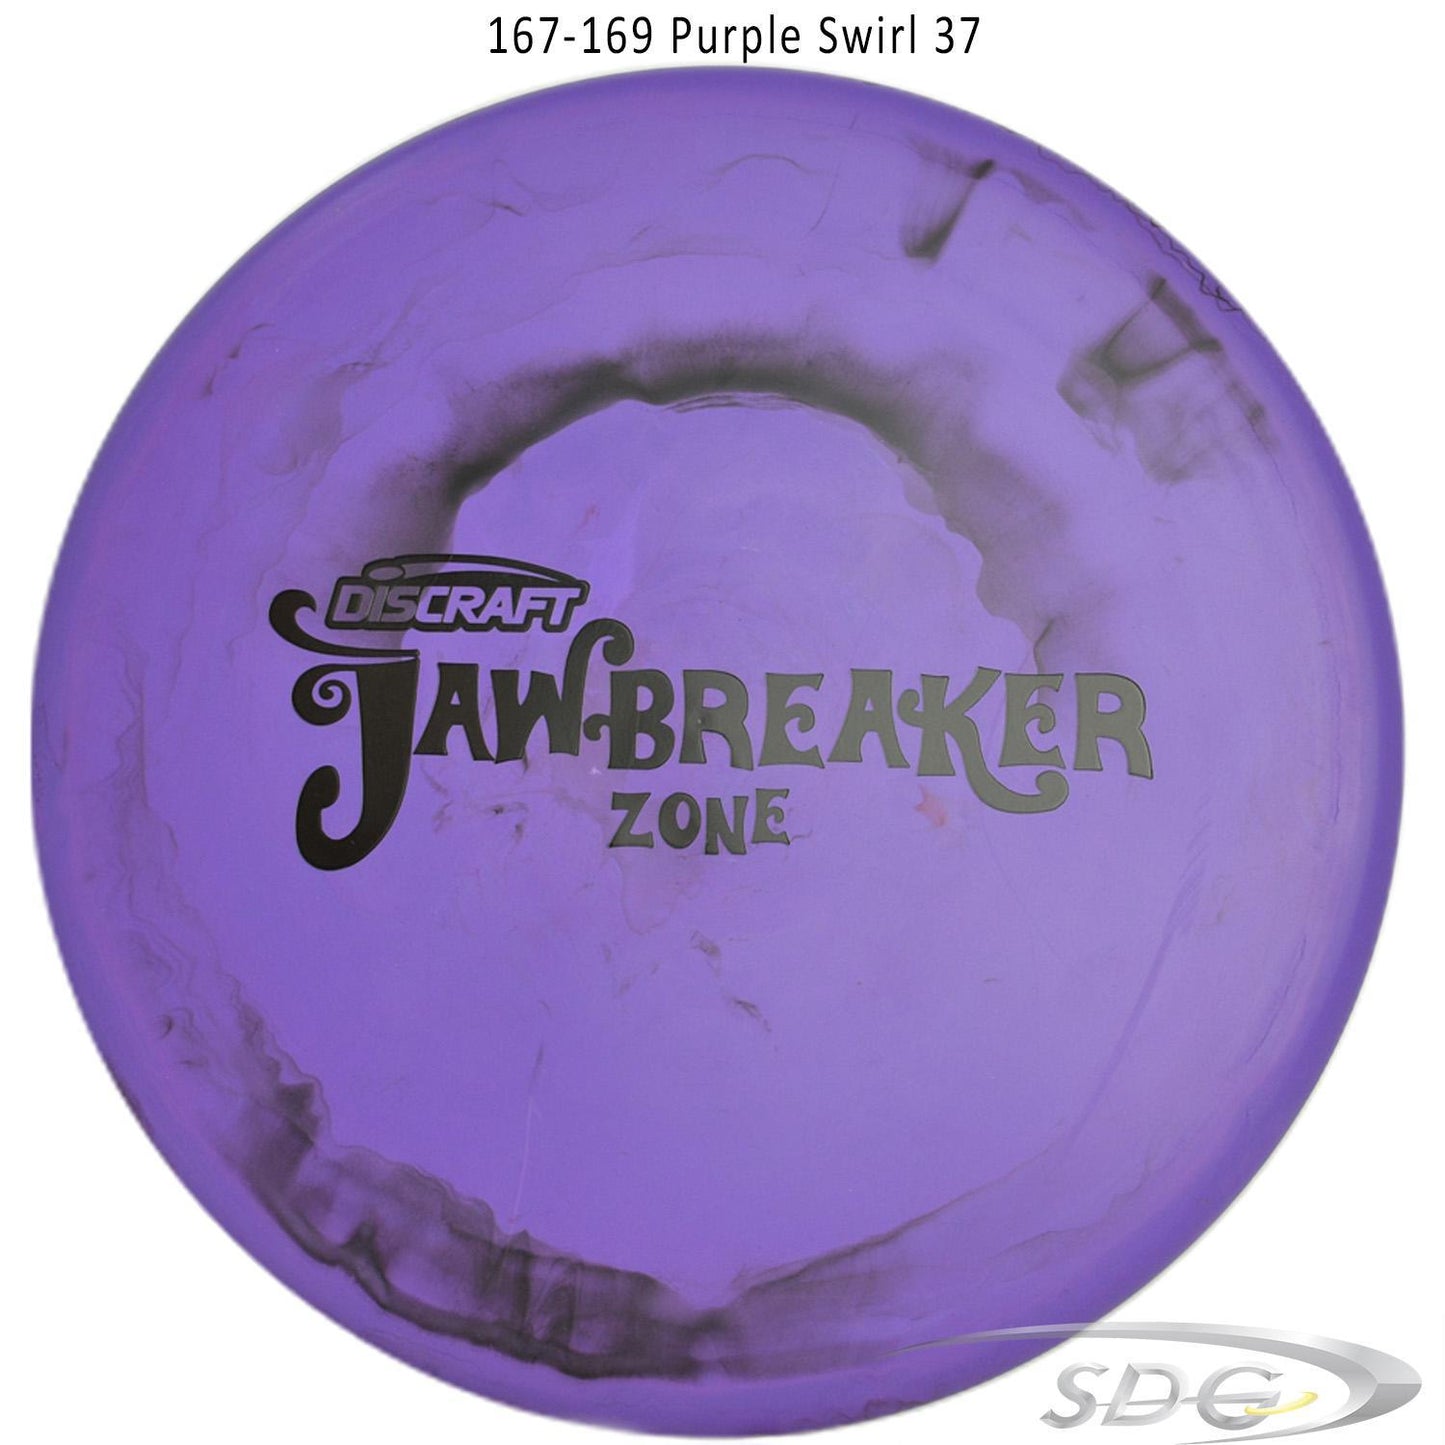 discraft-jawbreaker-zone-disc-golf-putter 167-169 Purple Swirl 37